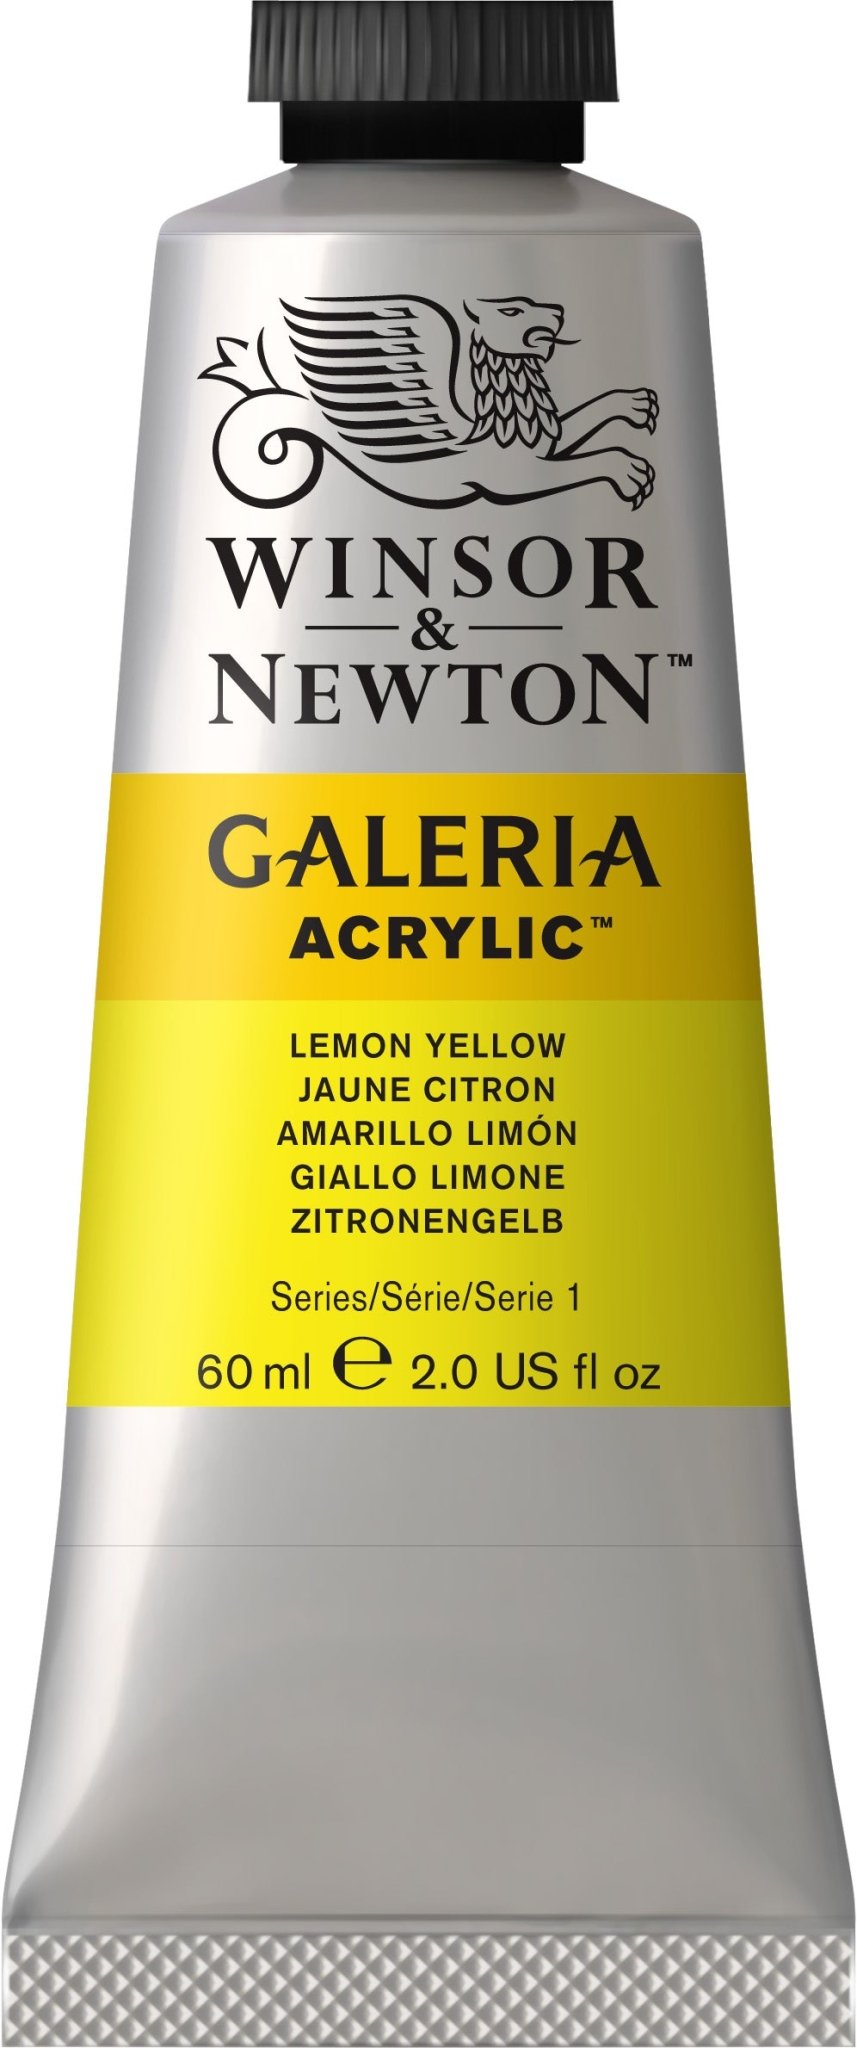 W & N Galeria Acrylic 60ml Lemon Yellow - theartshop.com.au